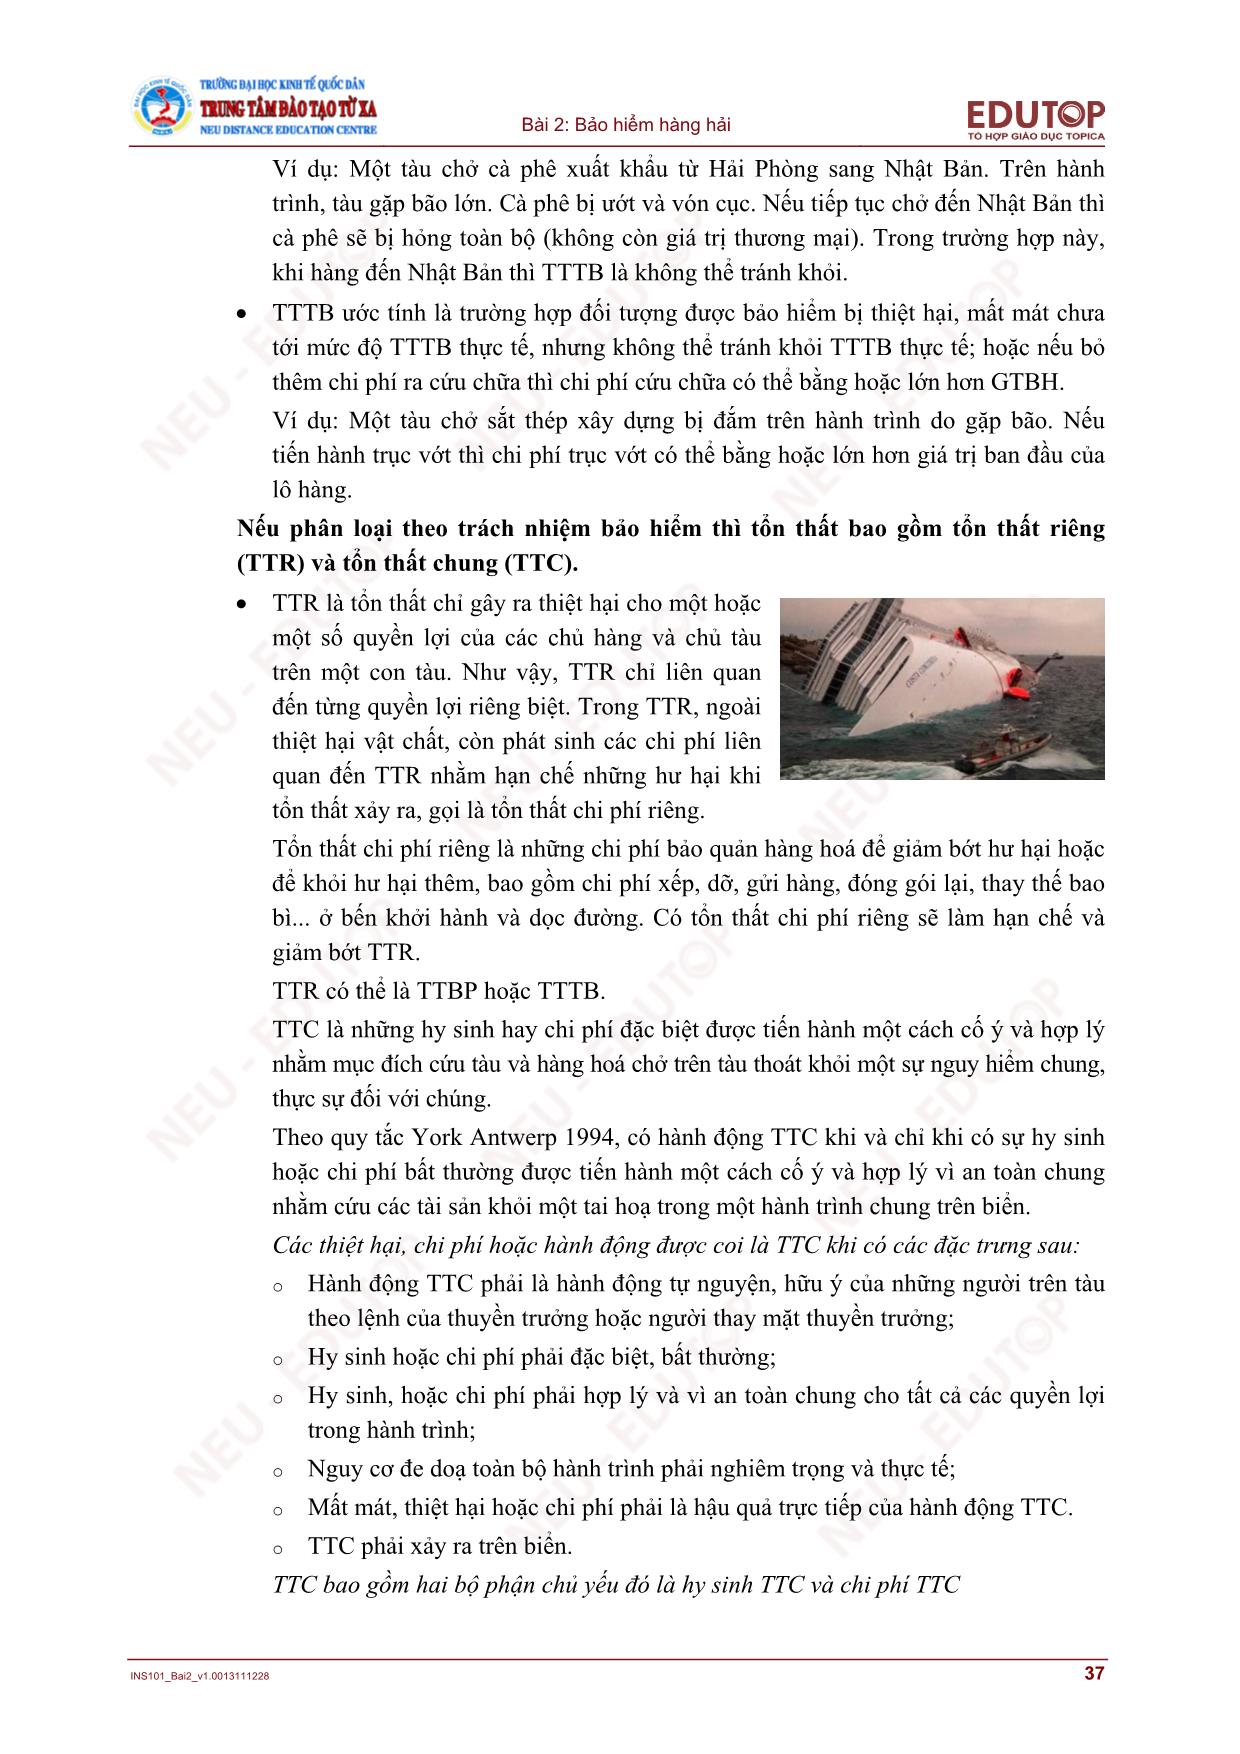 Bài giảng Bảo hiểm thương mại - Bài 2, Phần 2: Bảo hiểm hàng hải - Nguyễn Thị Lệ Huyền trang 5